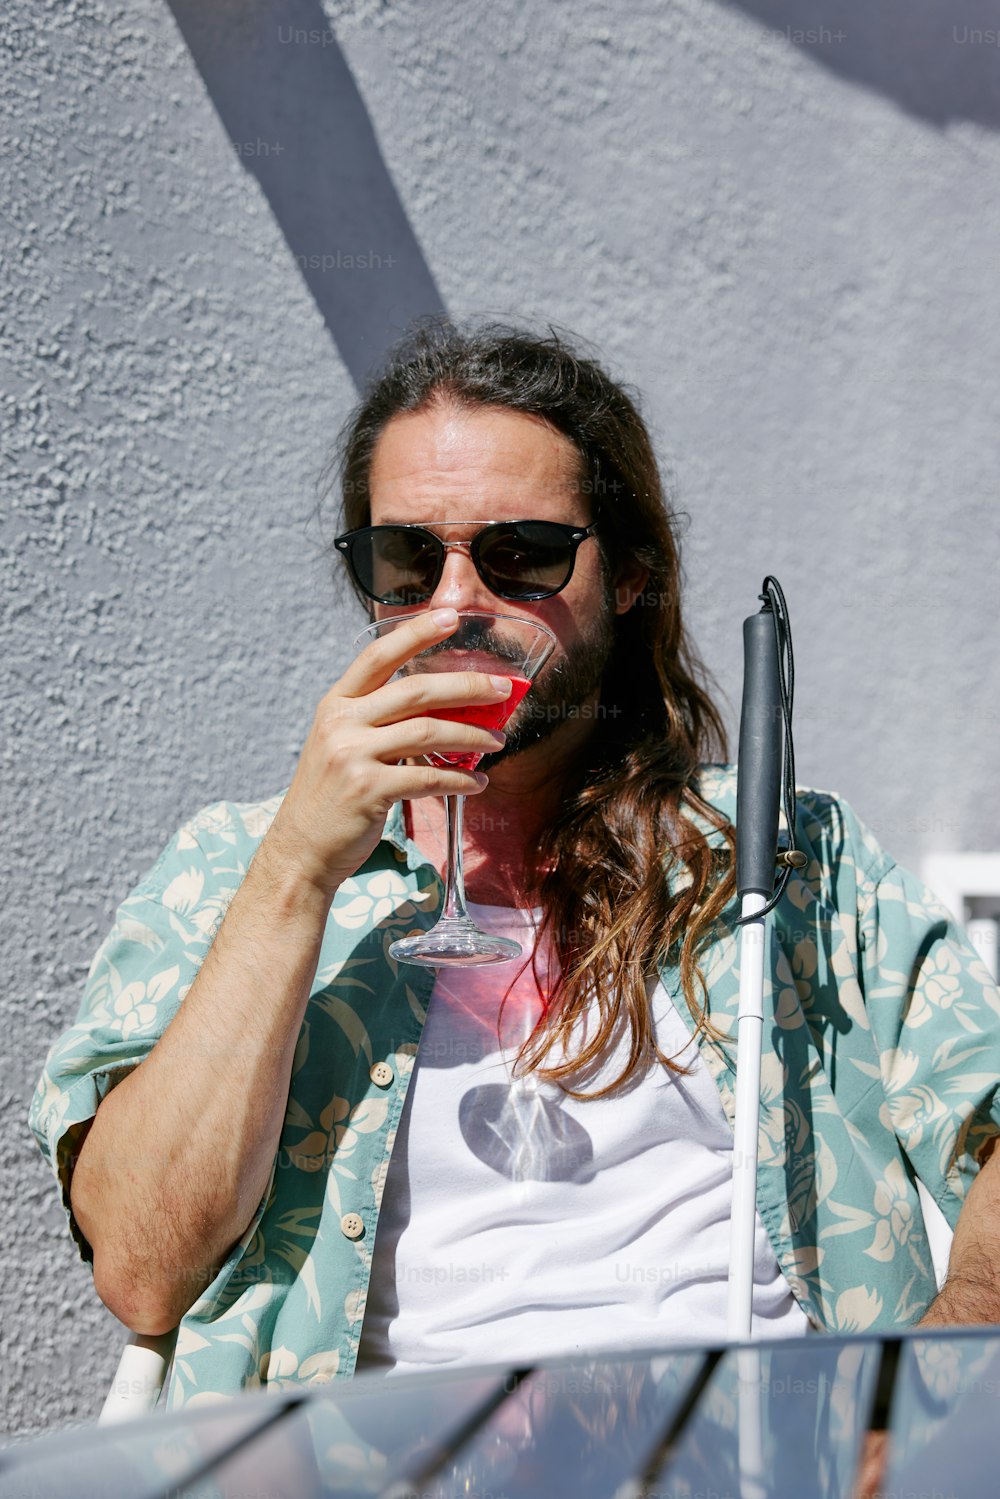 긴 머리와 선글라스를 쓴 남자가 와인 잔을 마시고 있다